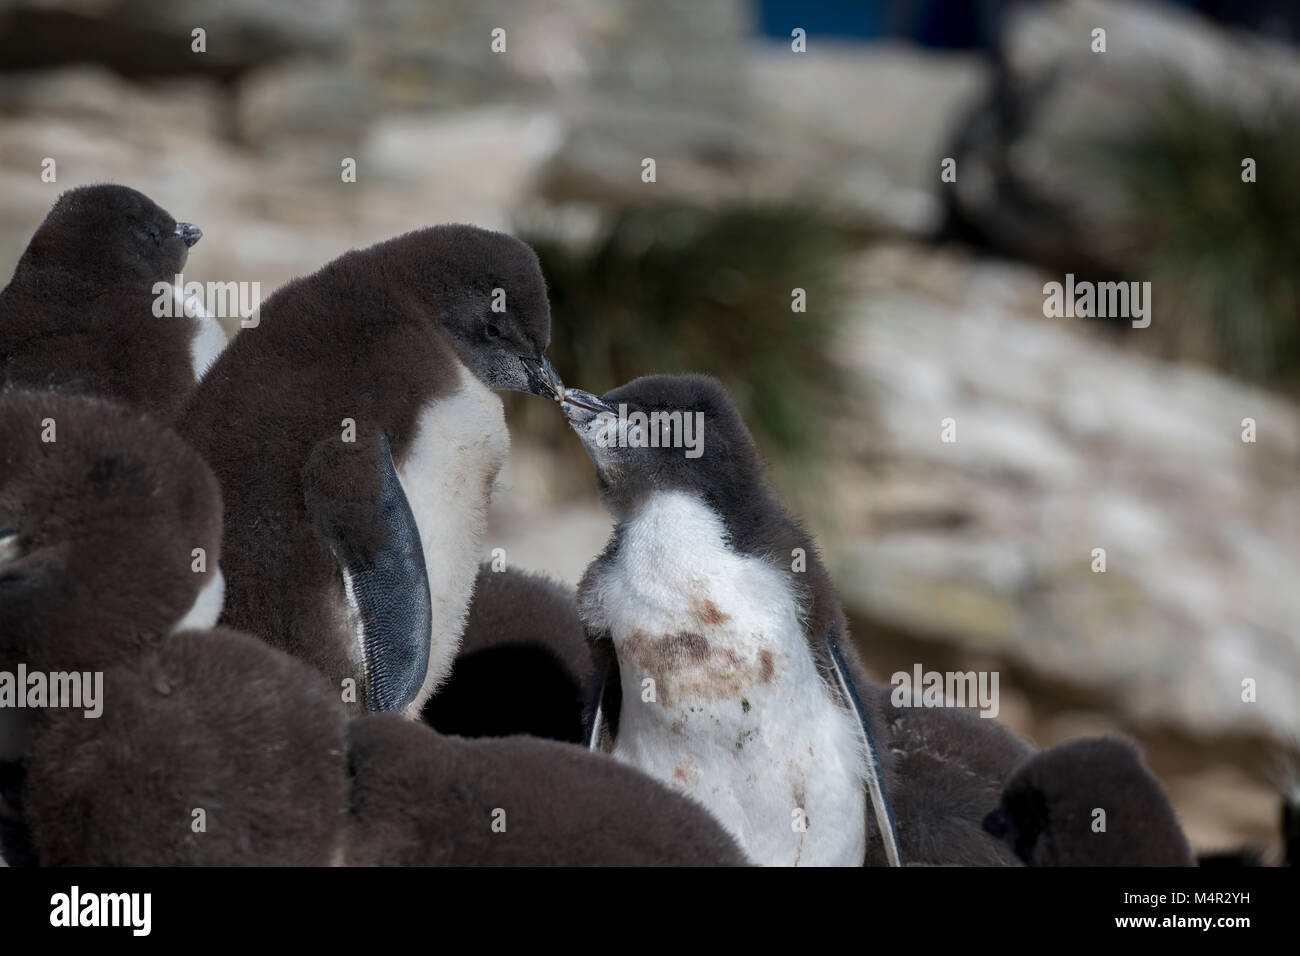 Îles Malouines, l'île Nouvelle. Rockhopper Penguin chicks (Eudyptes chrysocome) sauvage : becs de toucher. Banque D'Images